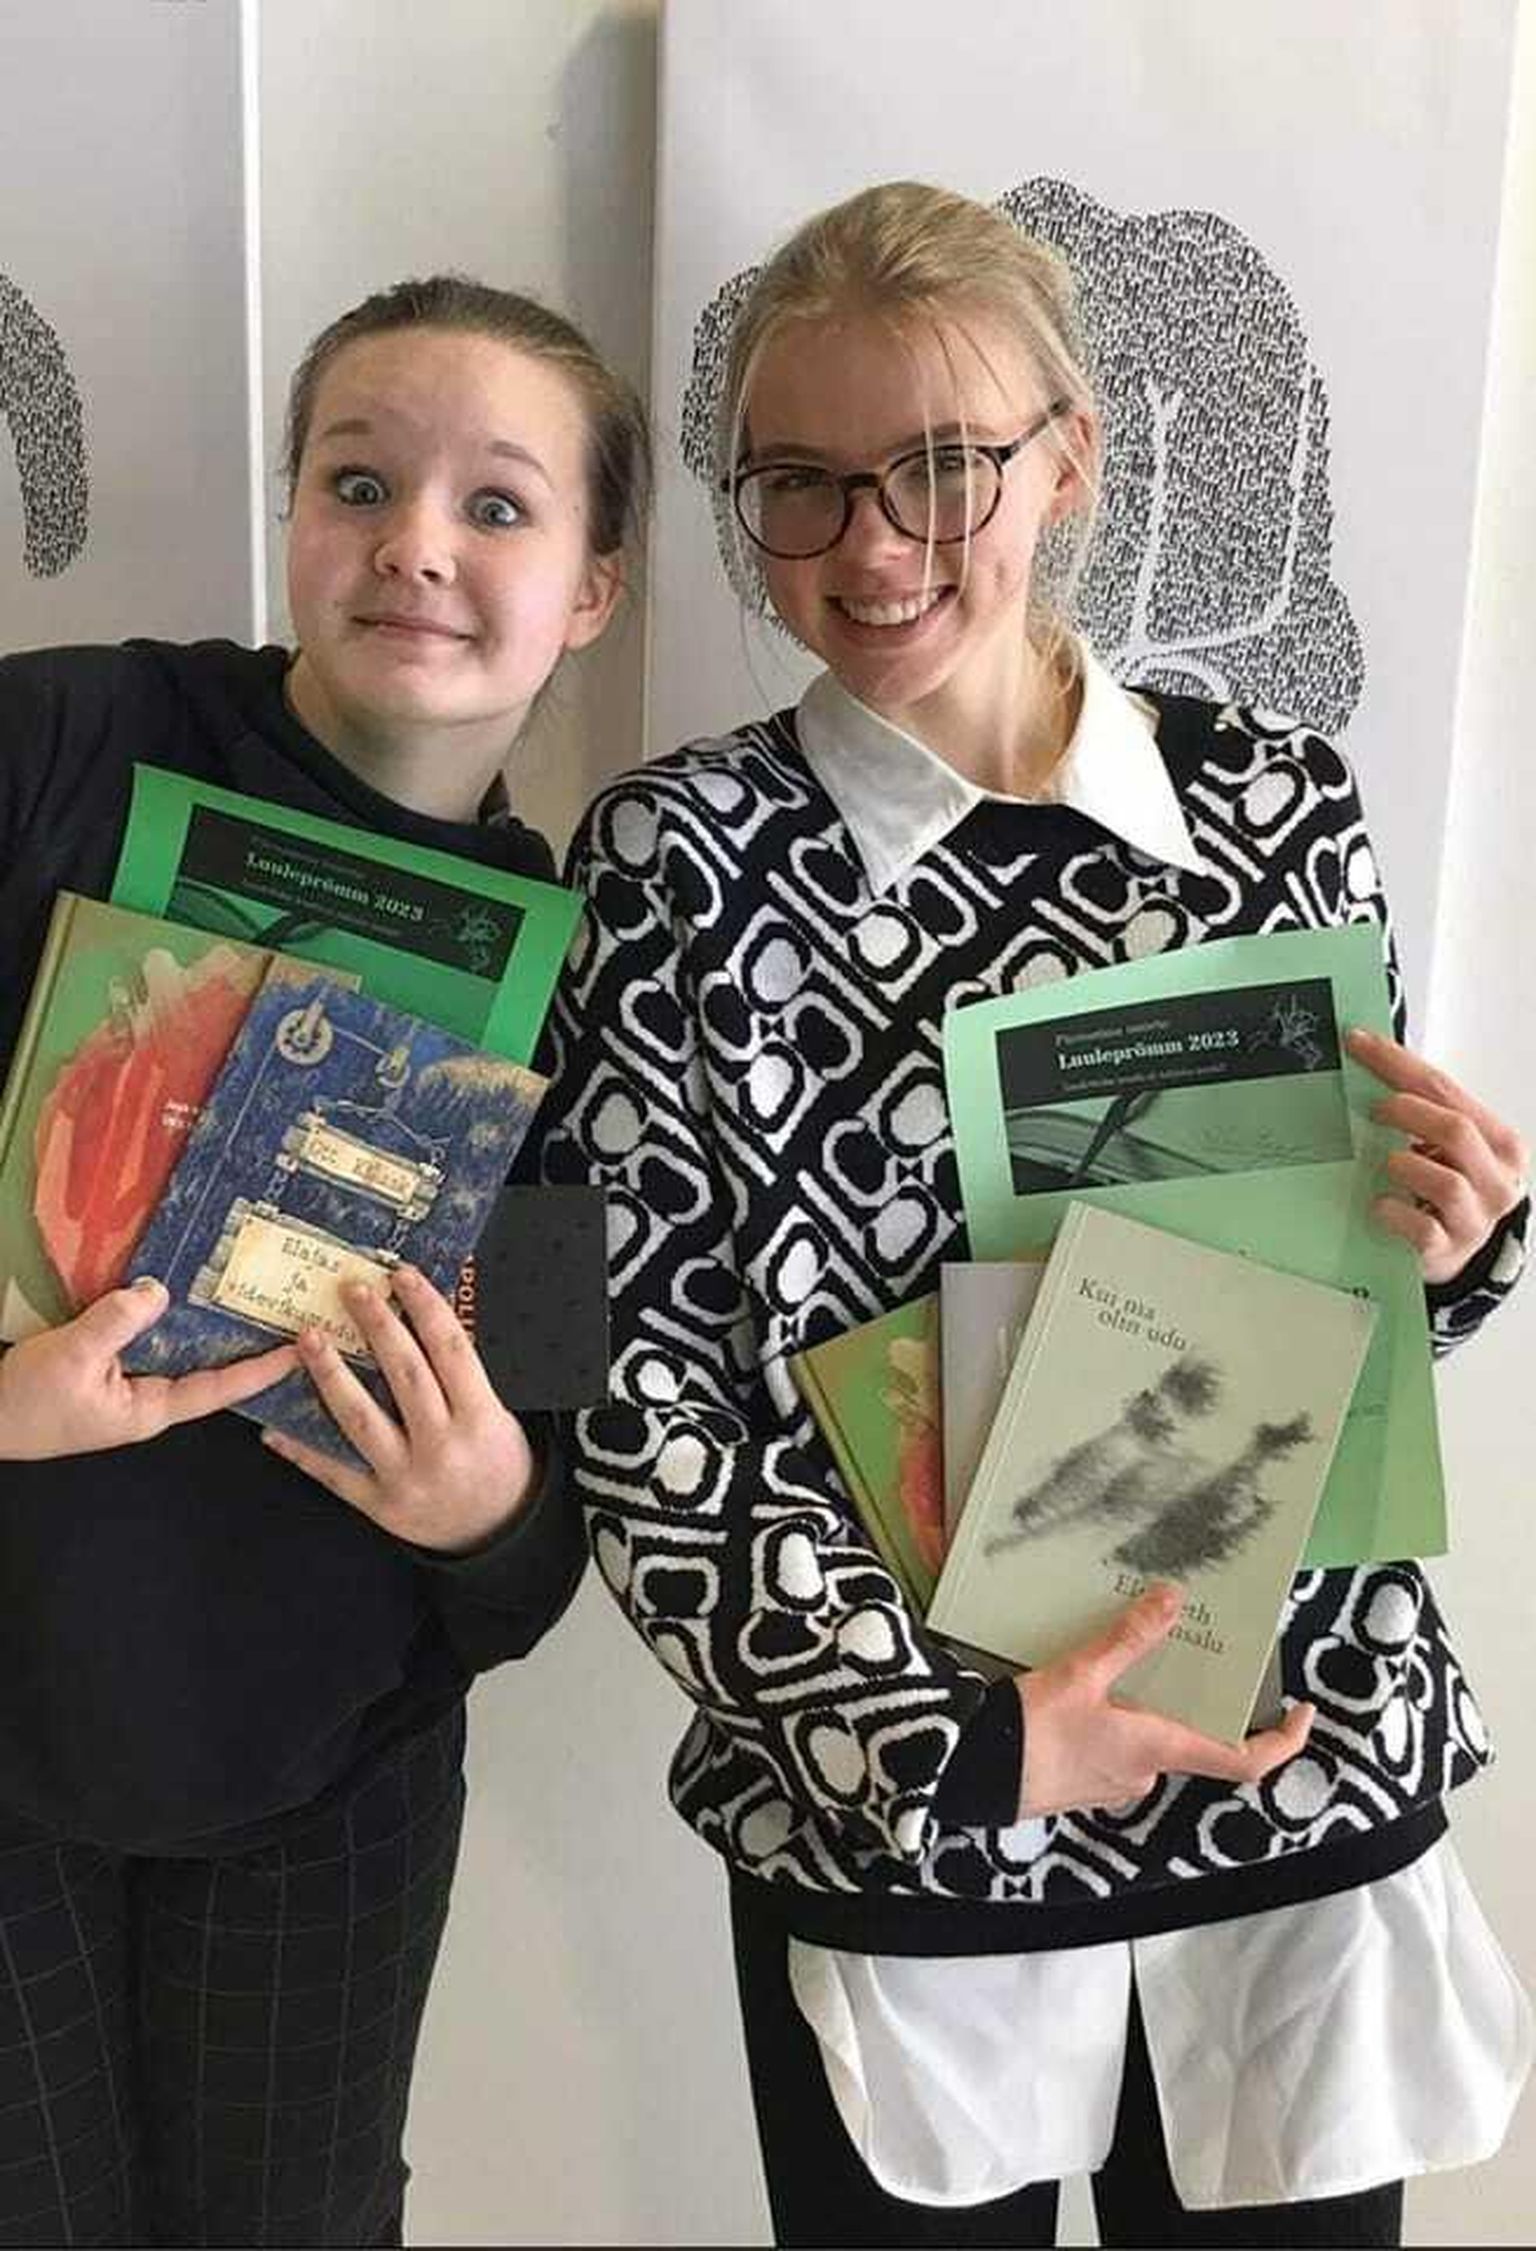 Pärnumaa noorte luuleprõmmul osalenud 12–15aastaste noorte vanuseklassis tuli 3. kohale Kadi Mumme (vasakul) ja võitjaks Jete-Pauline Ollep.